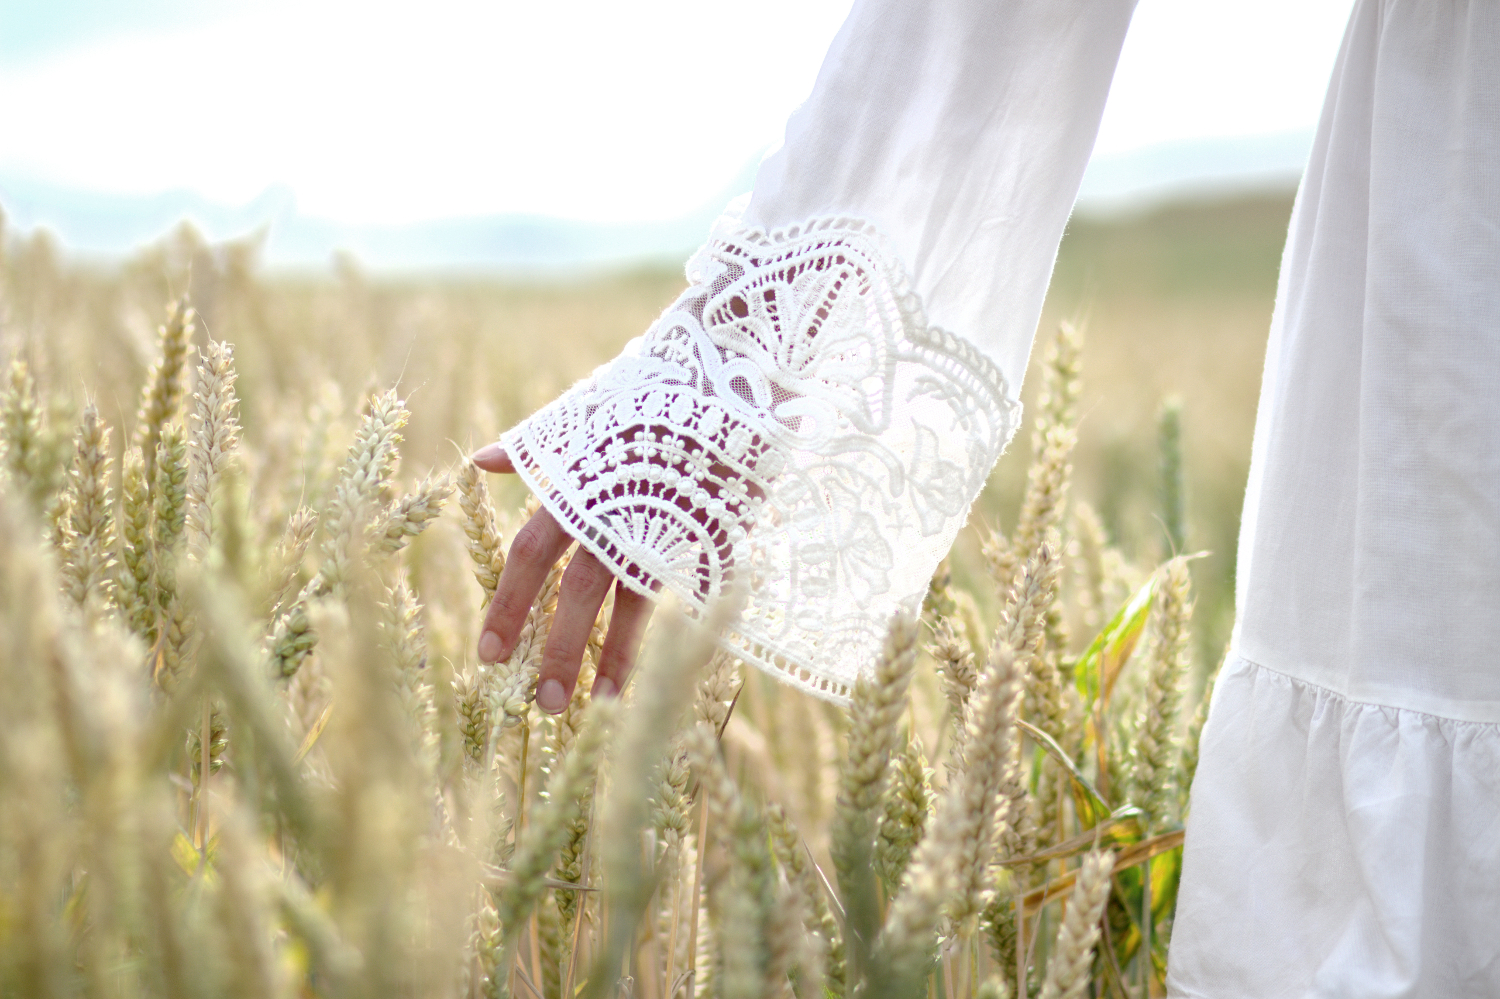 Bezaubernde Nana, bezauberndenana.de, Modebloggerin vom Lande, weißes Sommerkleid im Kornfeld, Kleid mit Trompetenärmel, Outfit, Gedanken